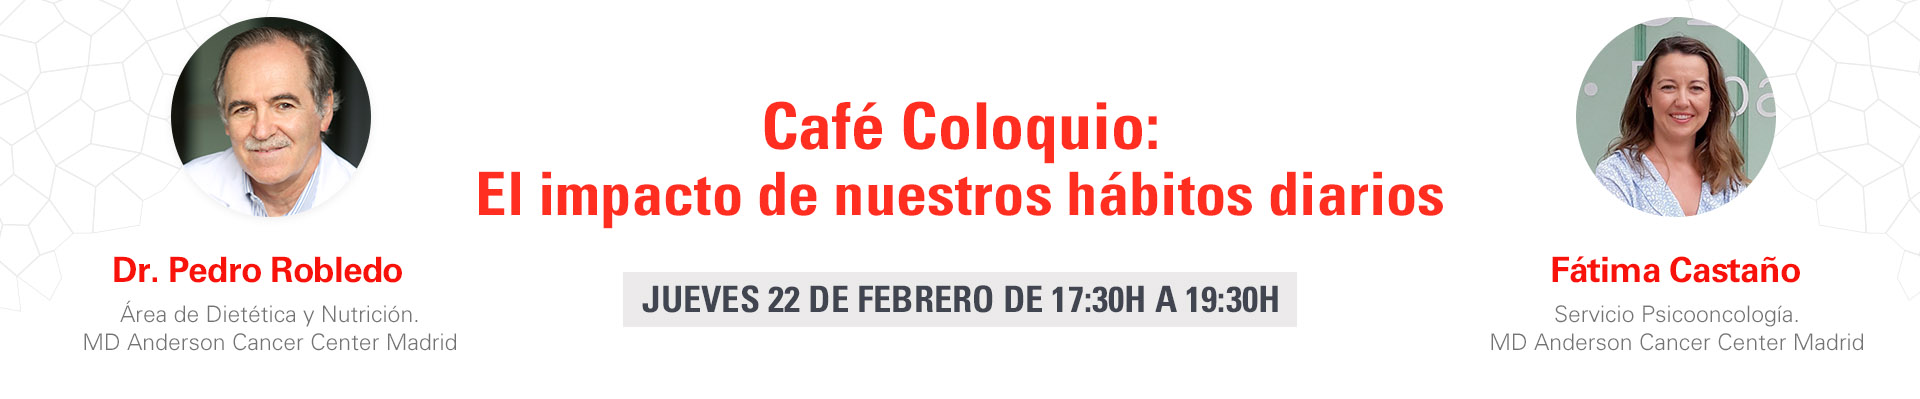 Café Coloquio - El impacto de nuestros hábitos diarios